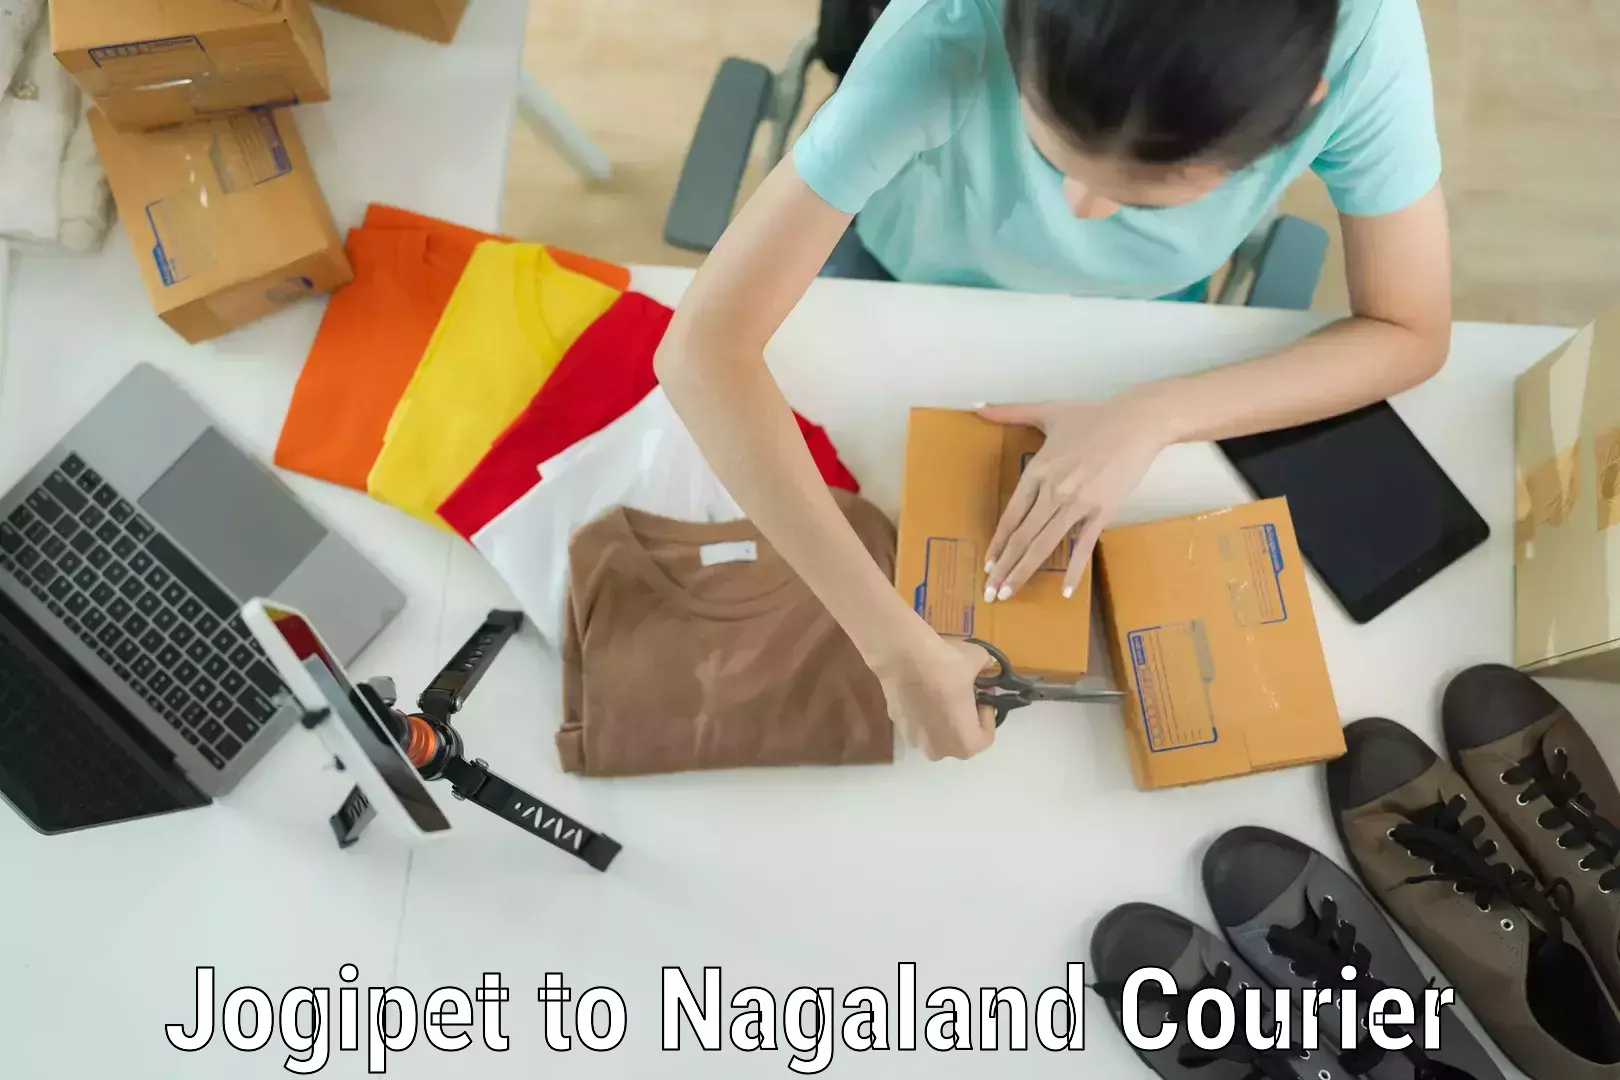 Luggage shipment tracking Jogipet to Nagaland